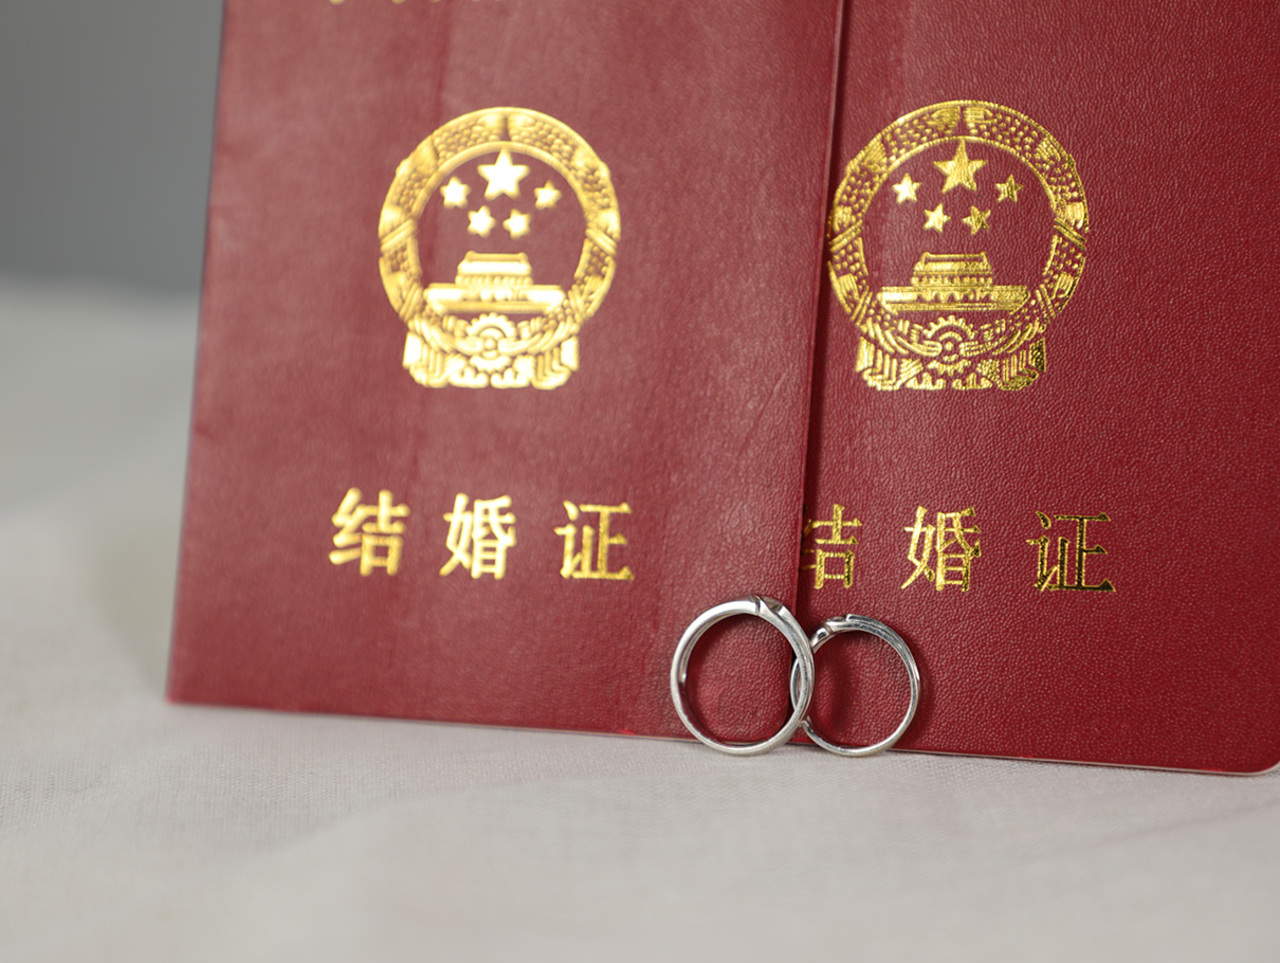 失信人员可以结婚领证吗